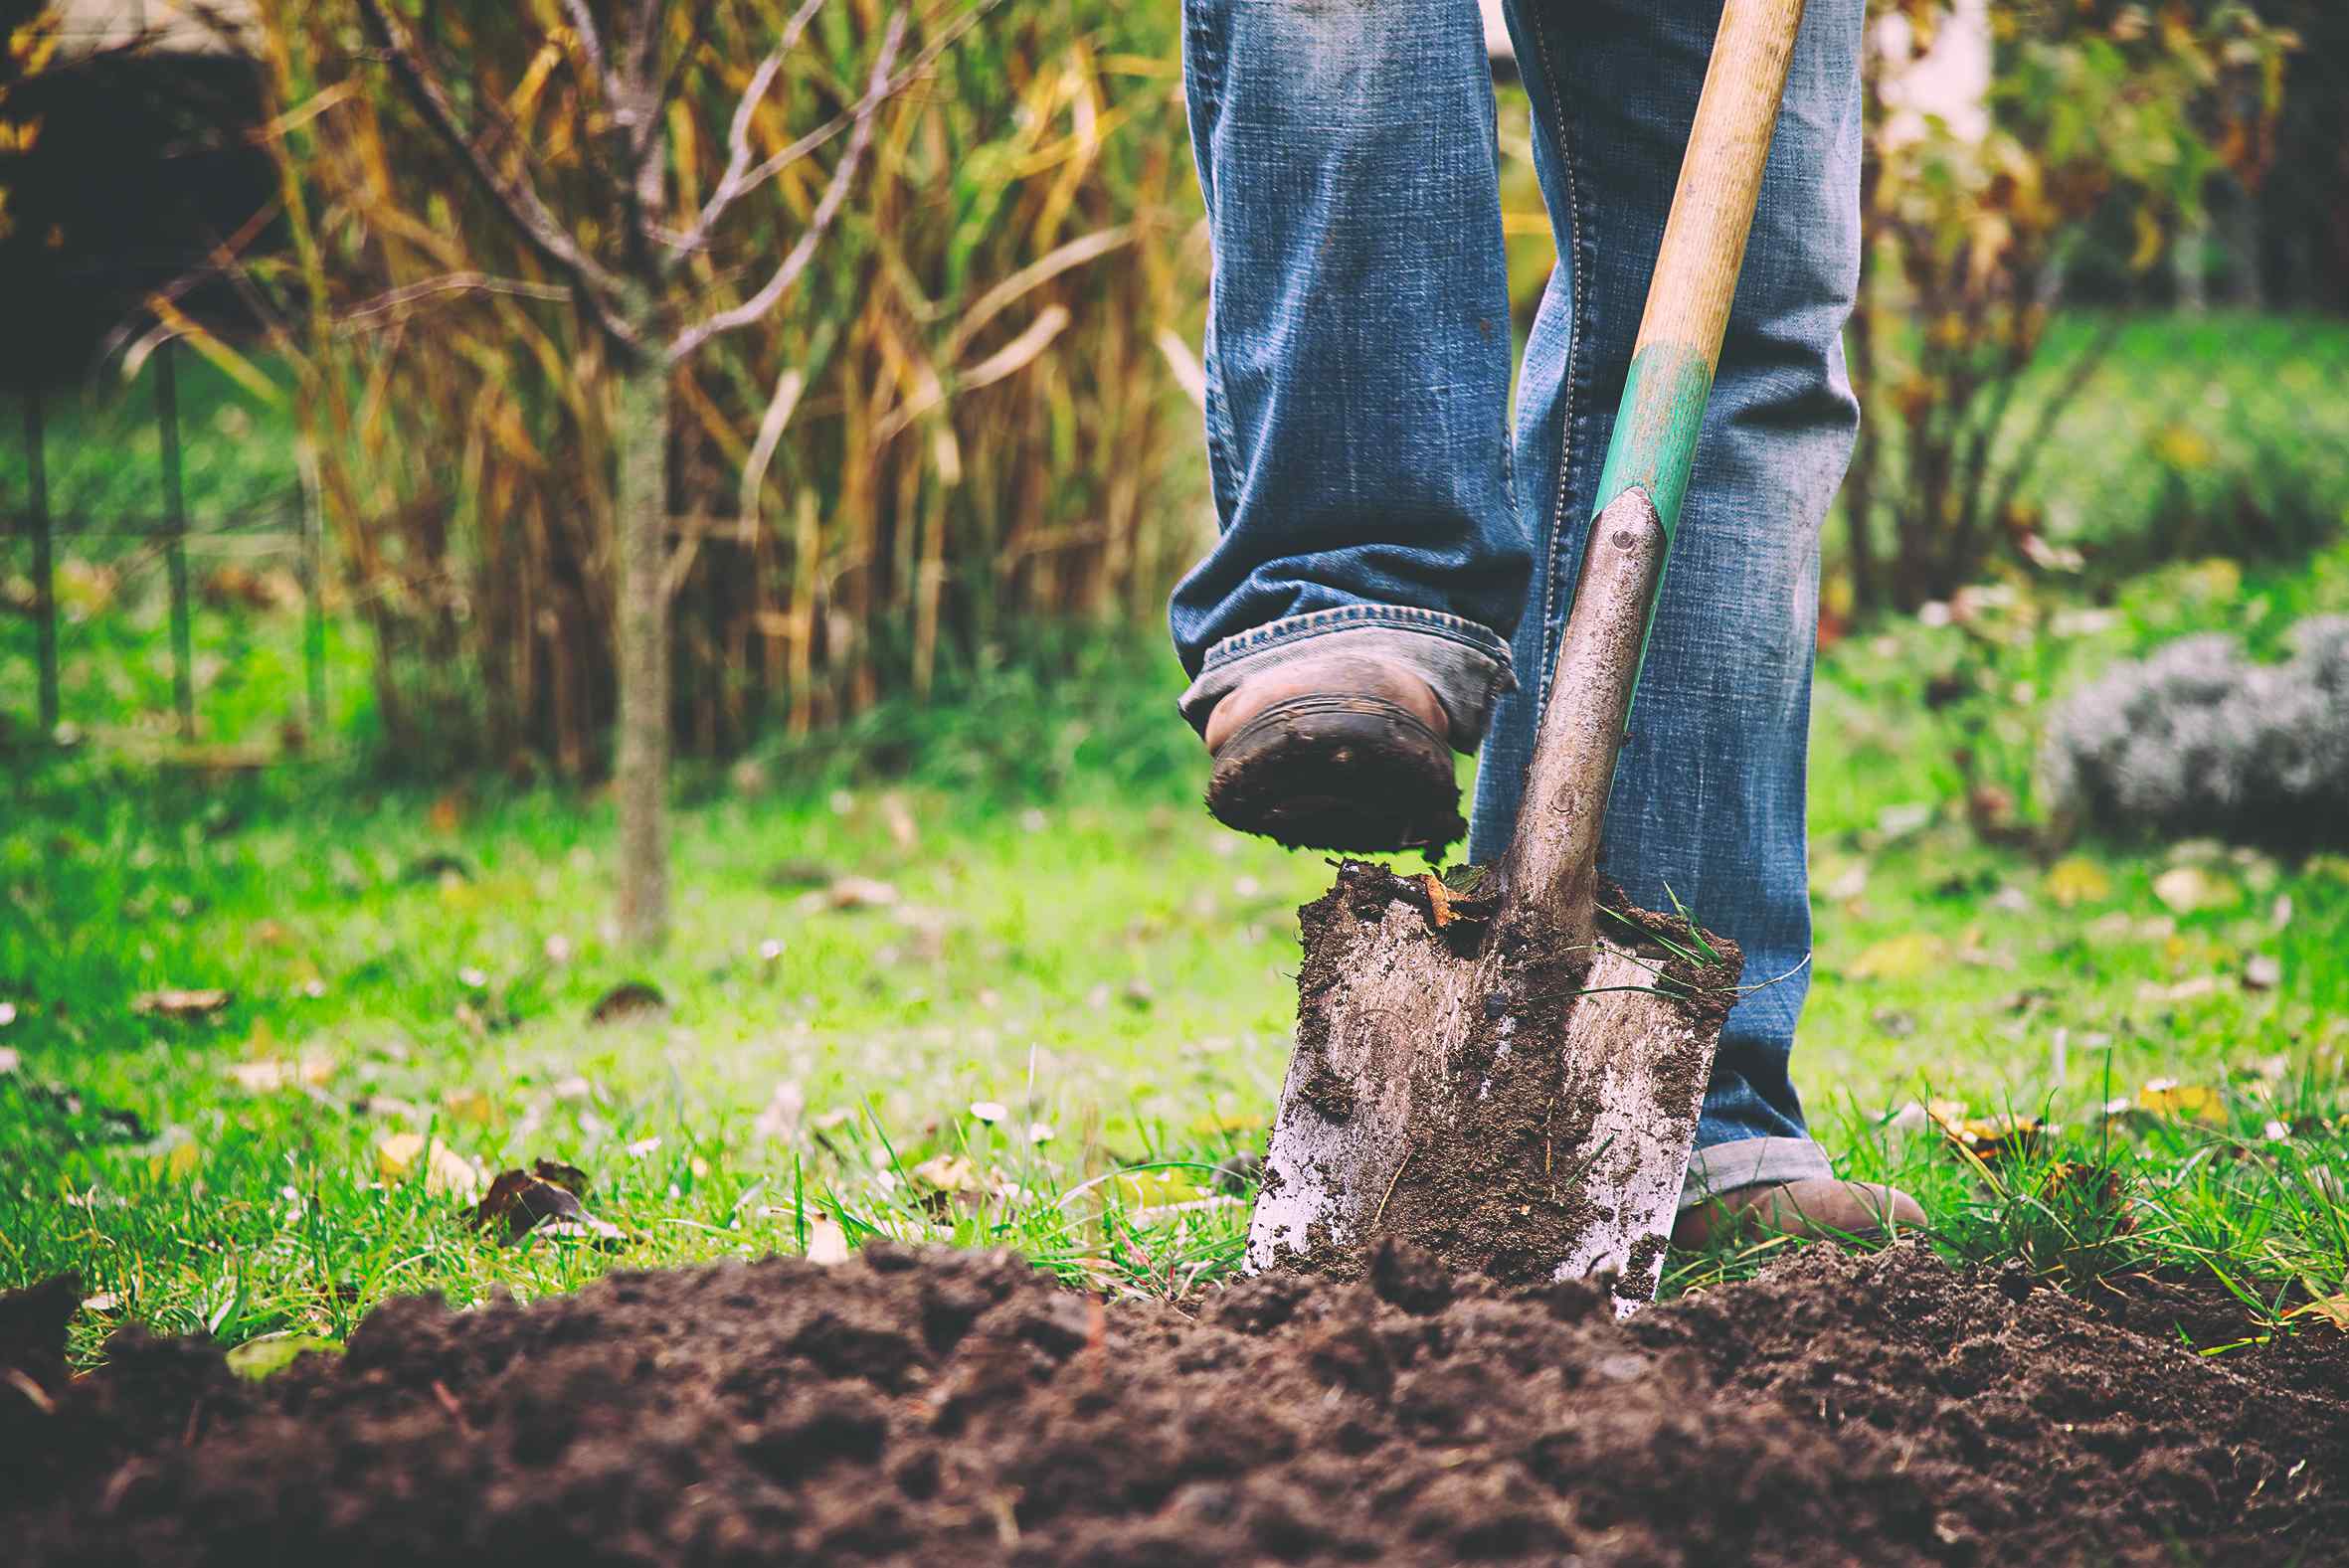 Pri rýľovaní môžete do pôdy zapracovať rastliny zeleného hnojenia alebo kompost a obohatiť tak pôdu o živiny. Čerstvý hnoj však nechajte zapracovaný len na povrchu. 